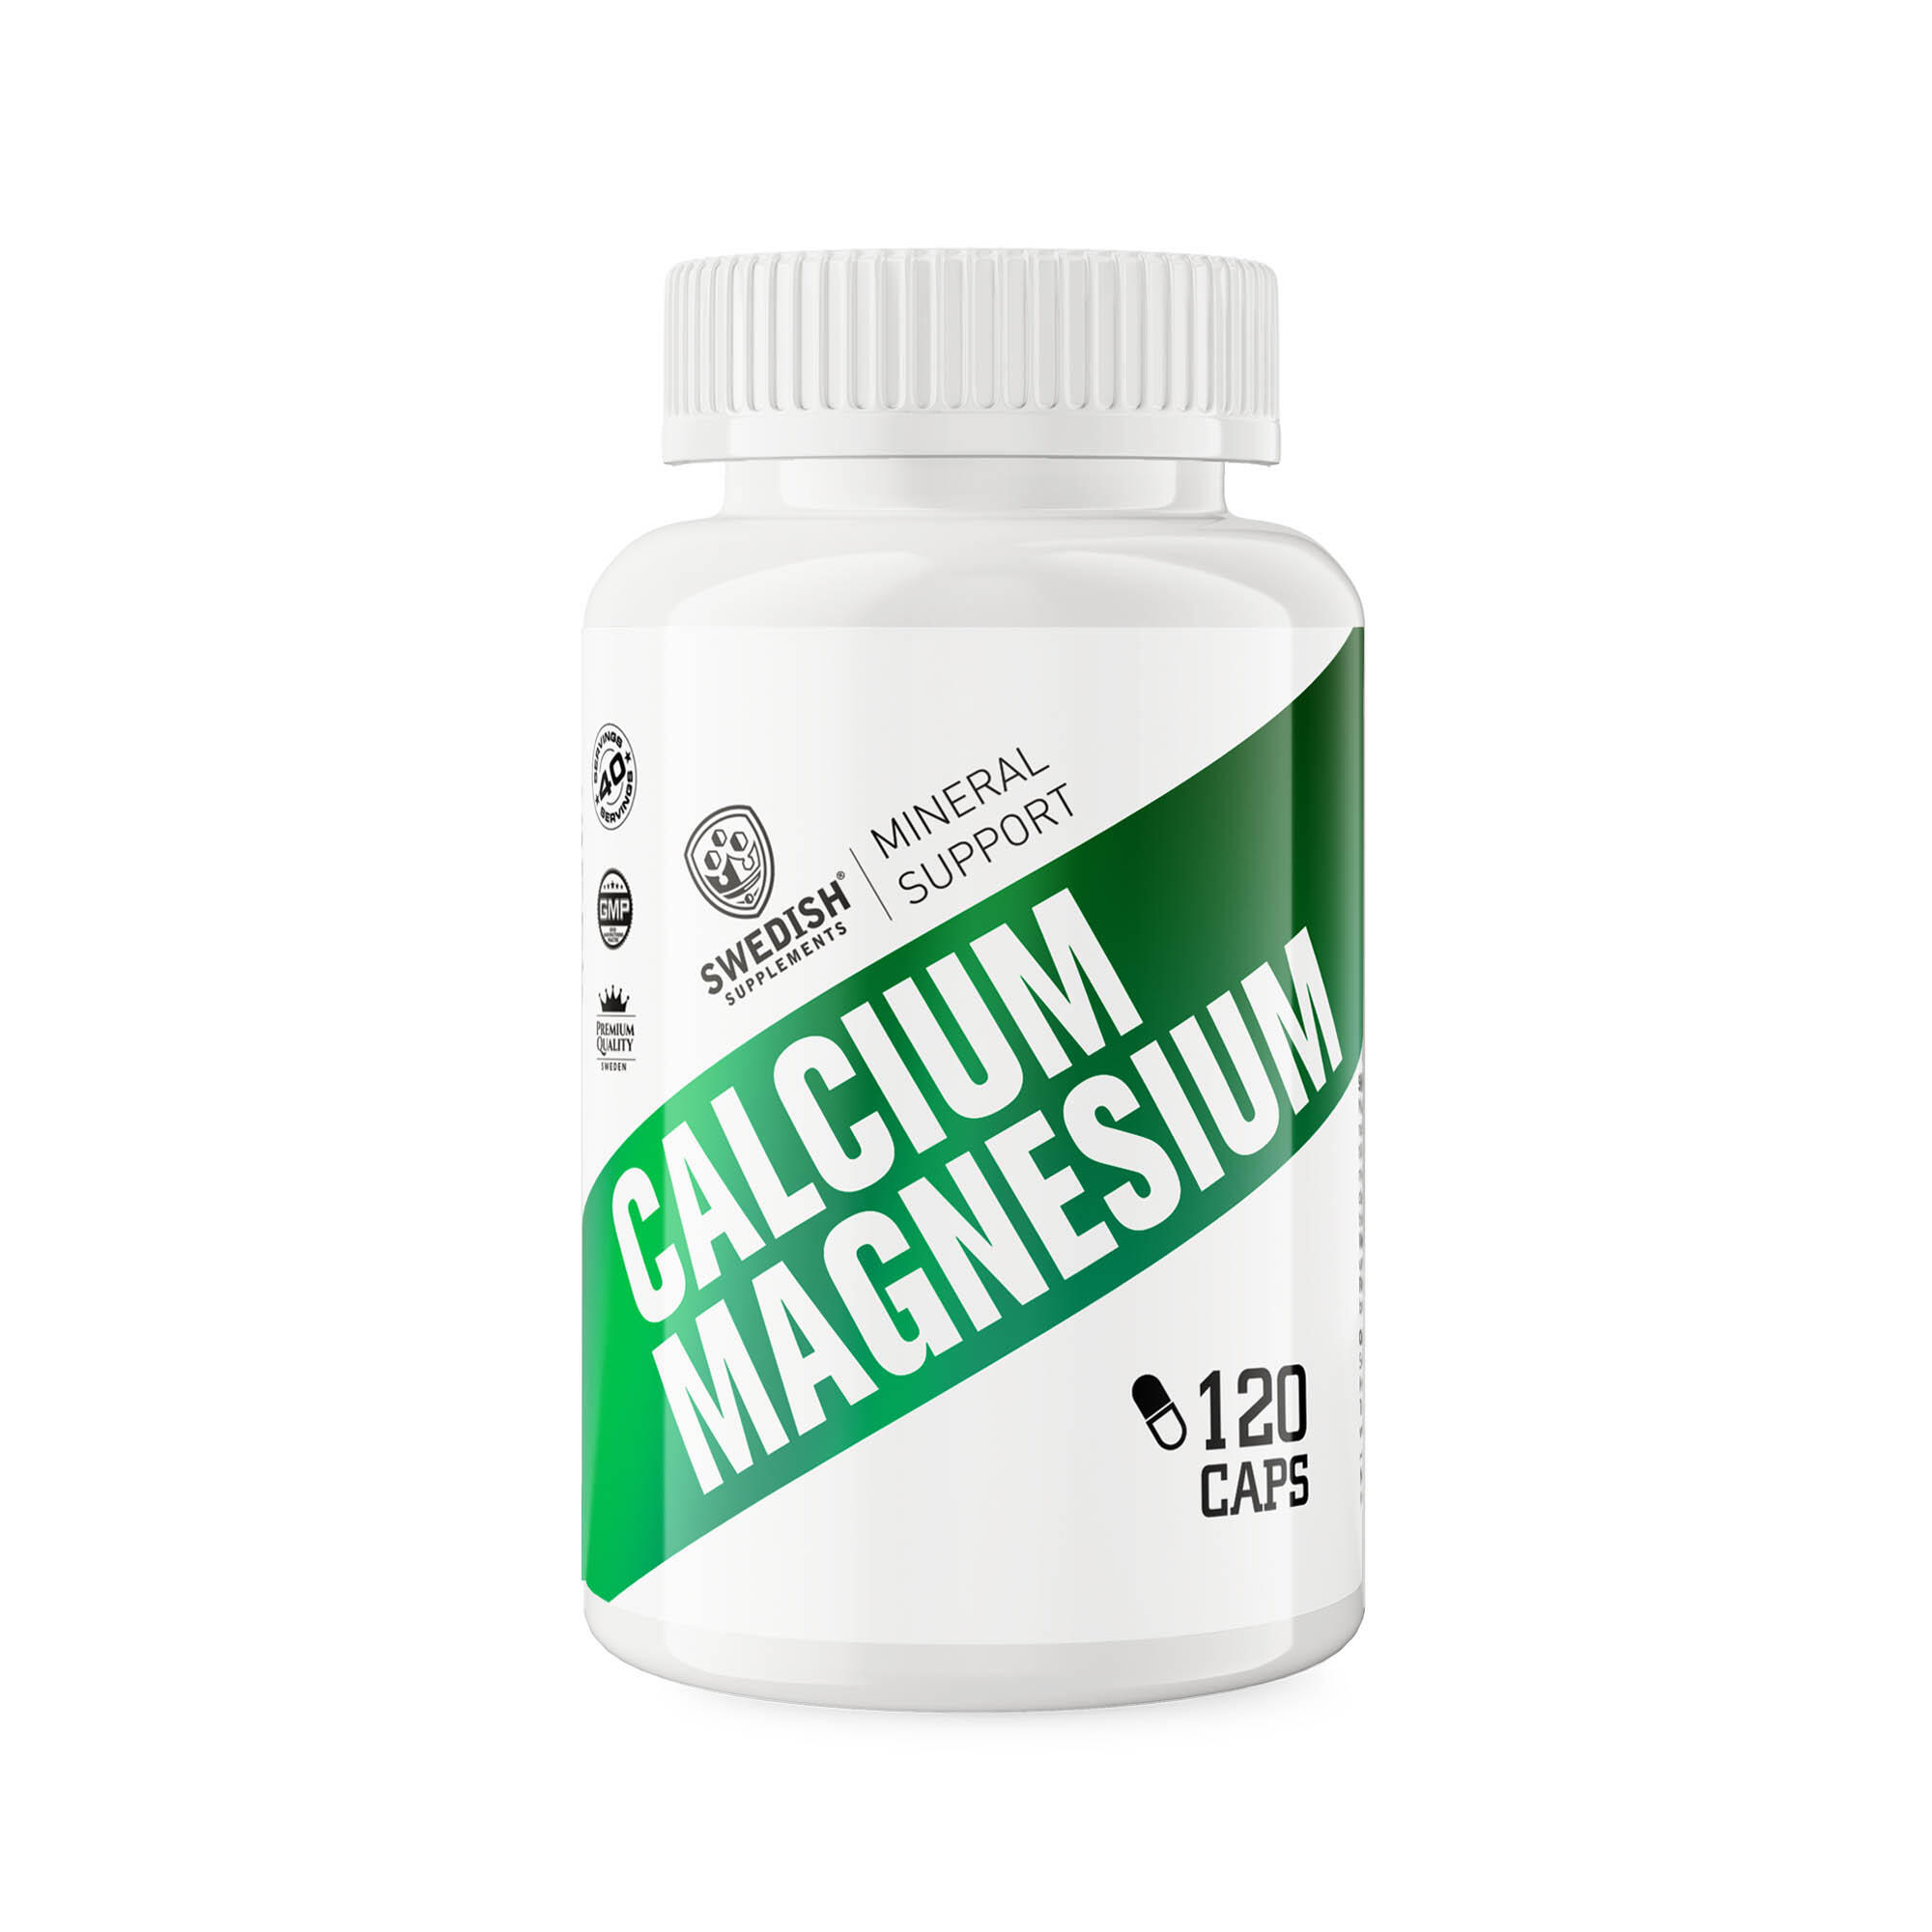 Kosttillskott Swedish Supplements Calcium Magnesium 120 Caps